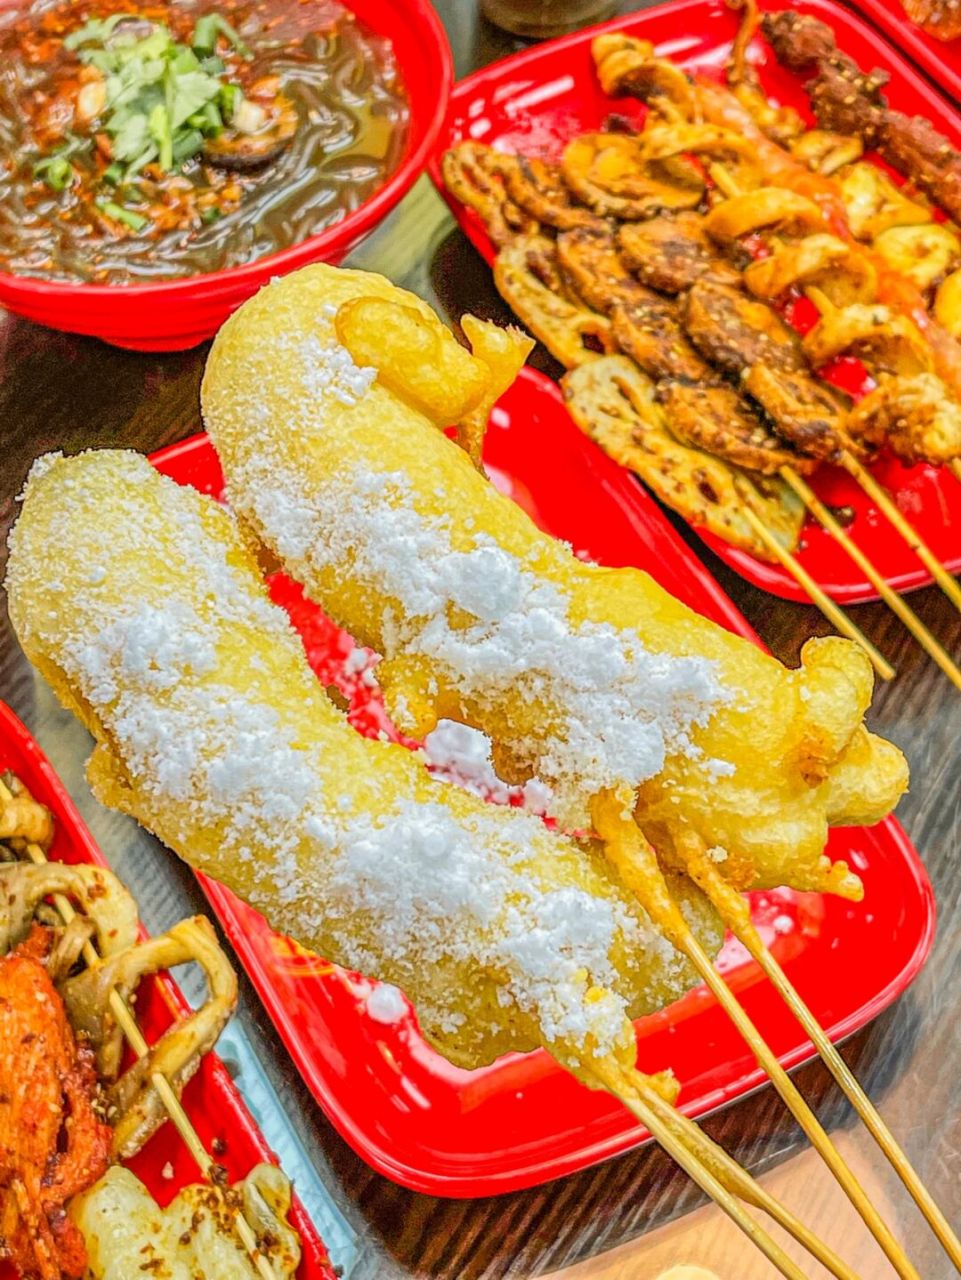 三林金谊广场美食图片